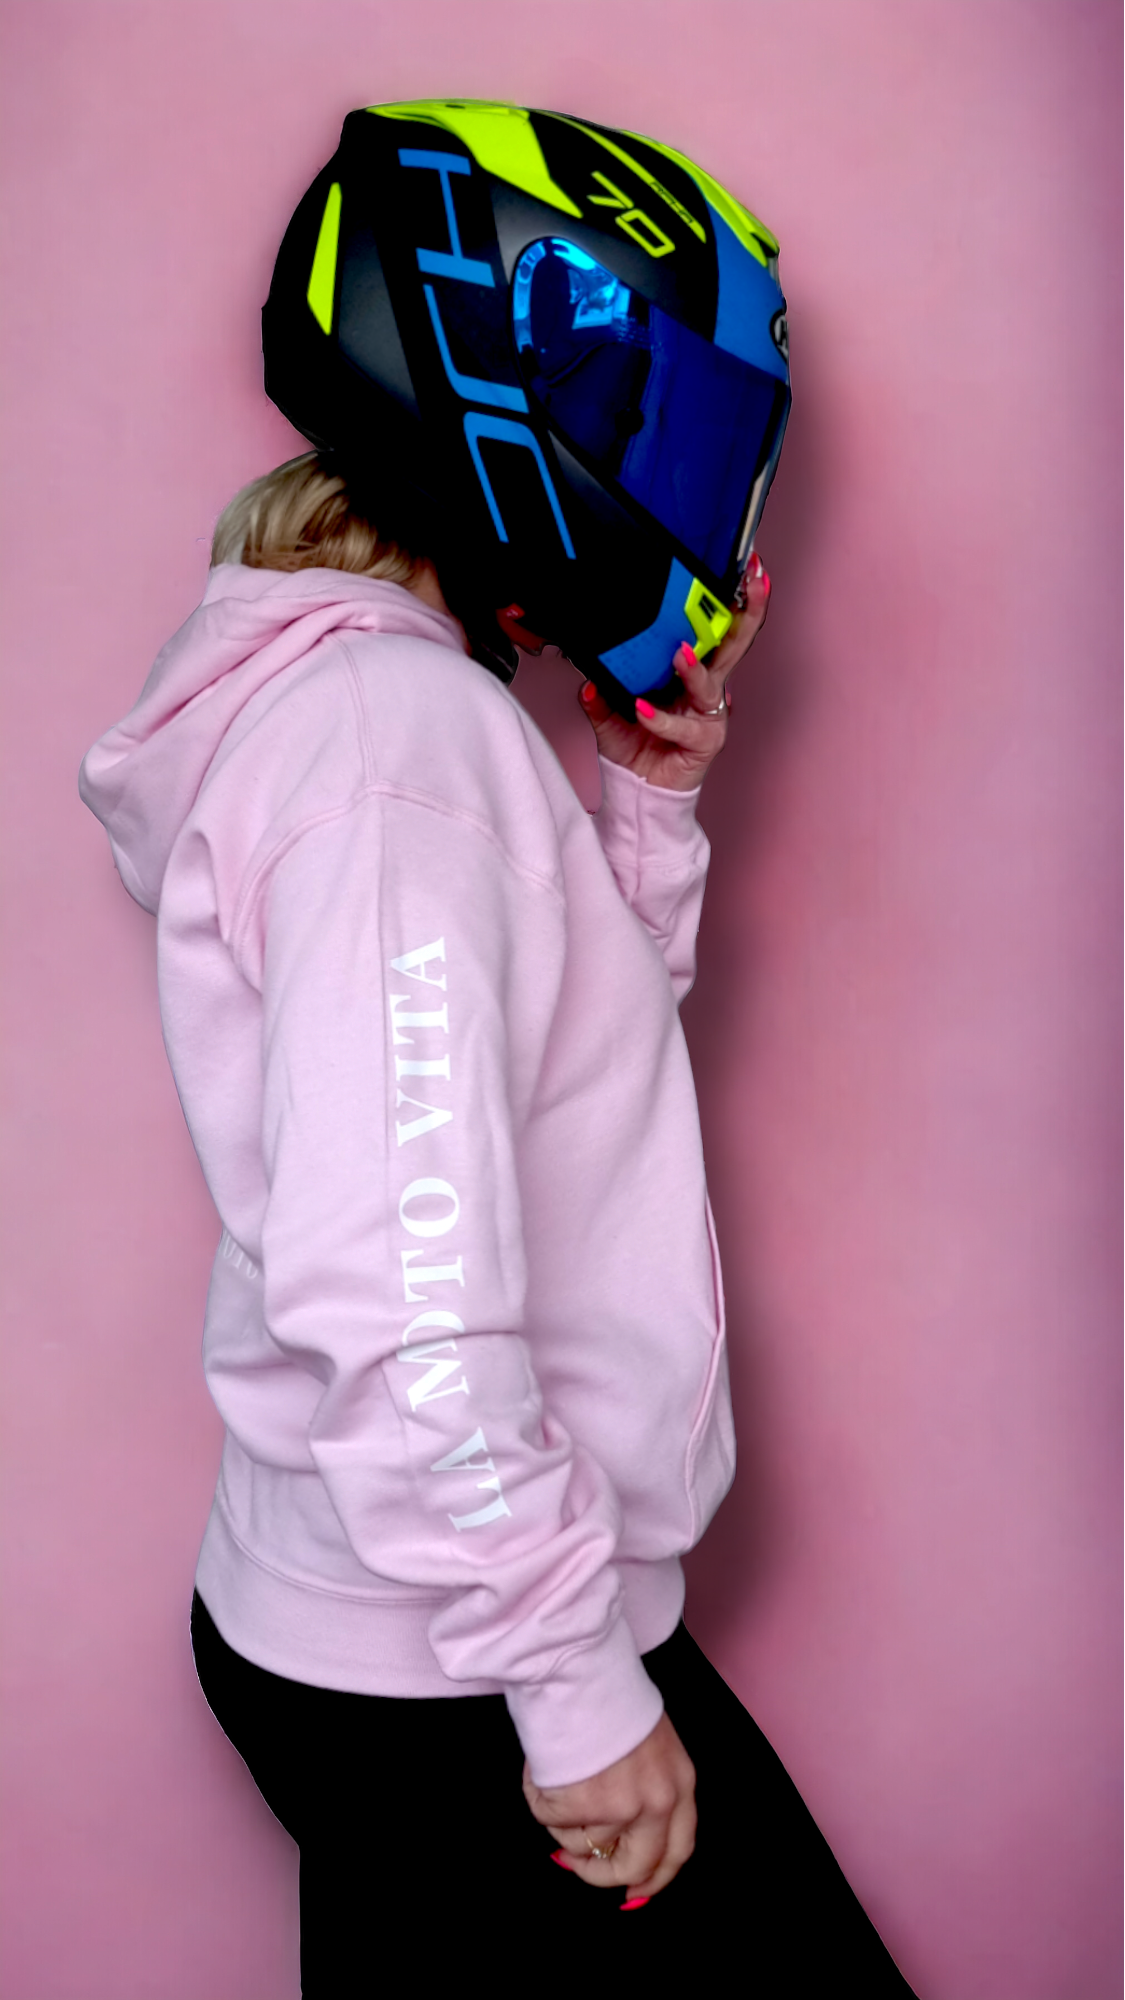 Pink babe LMV hoodie